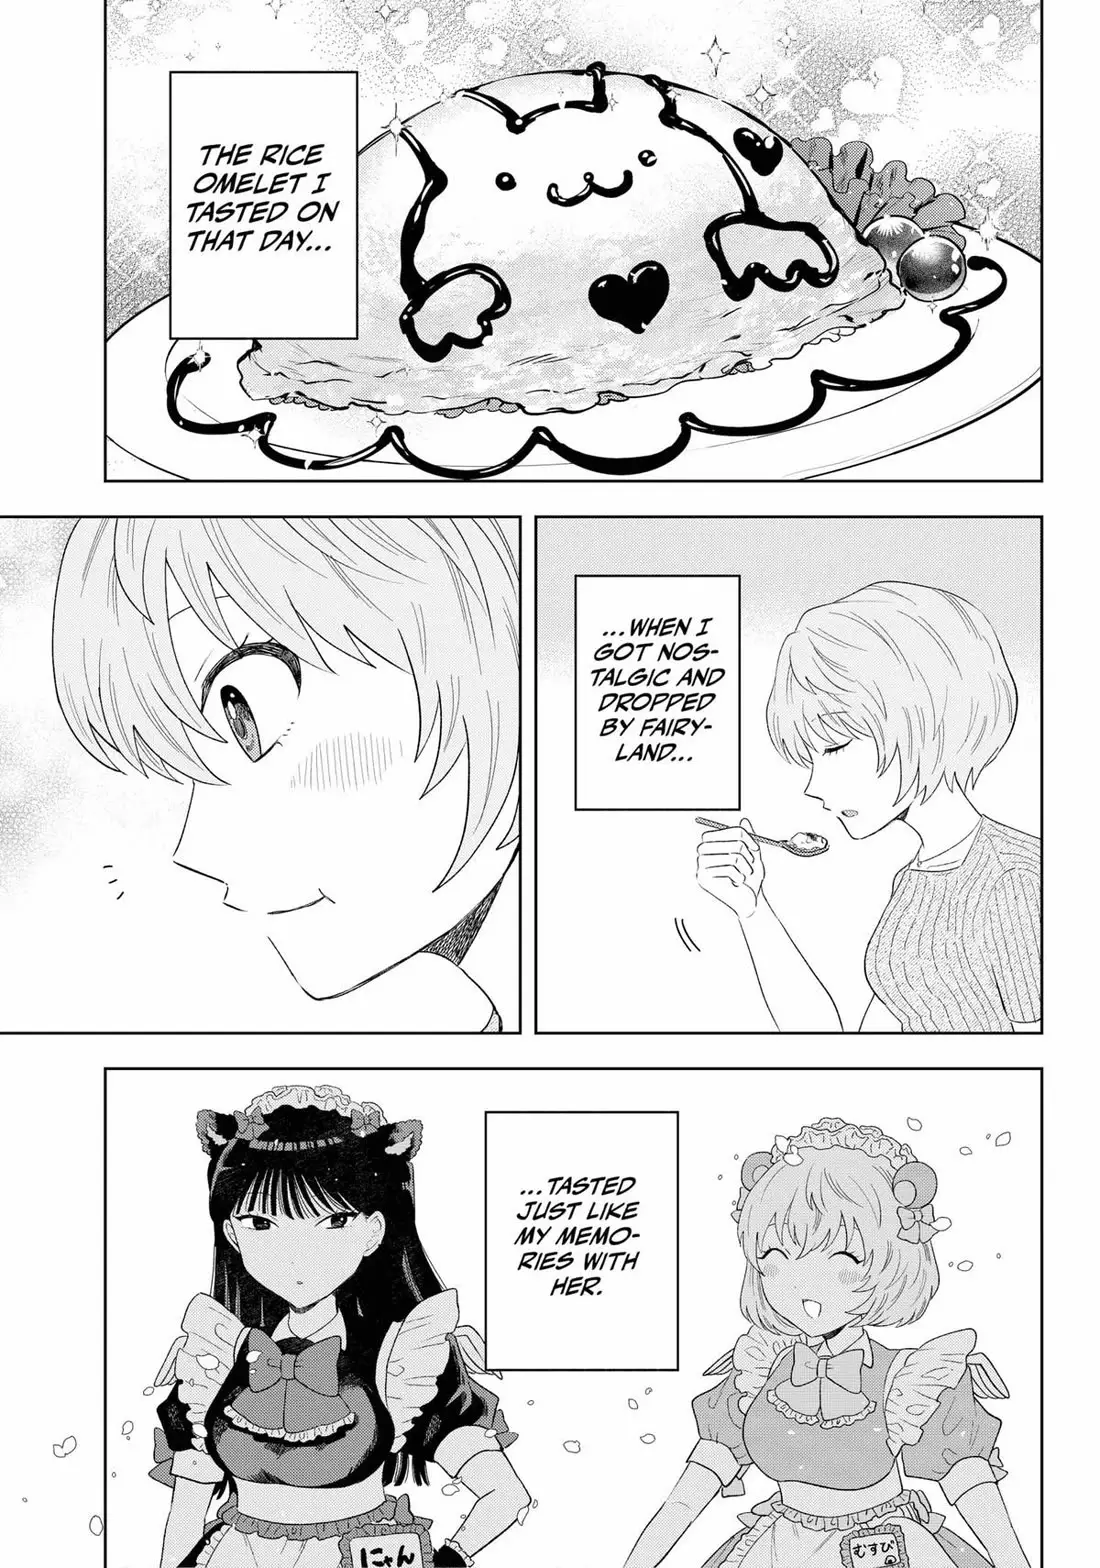 Tsuruko Returns The Favor - 16 page 19-87b6ab49